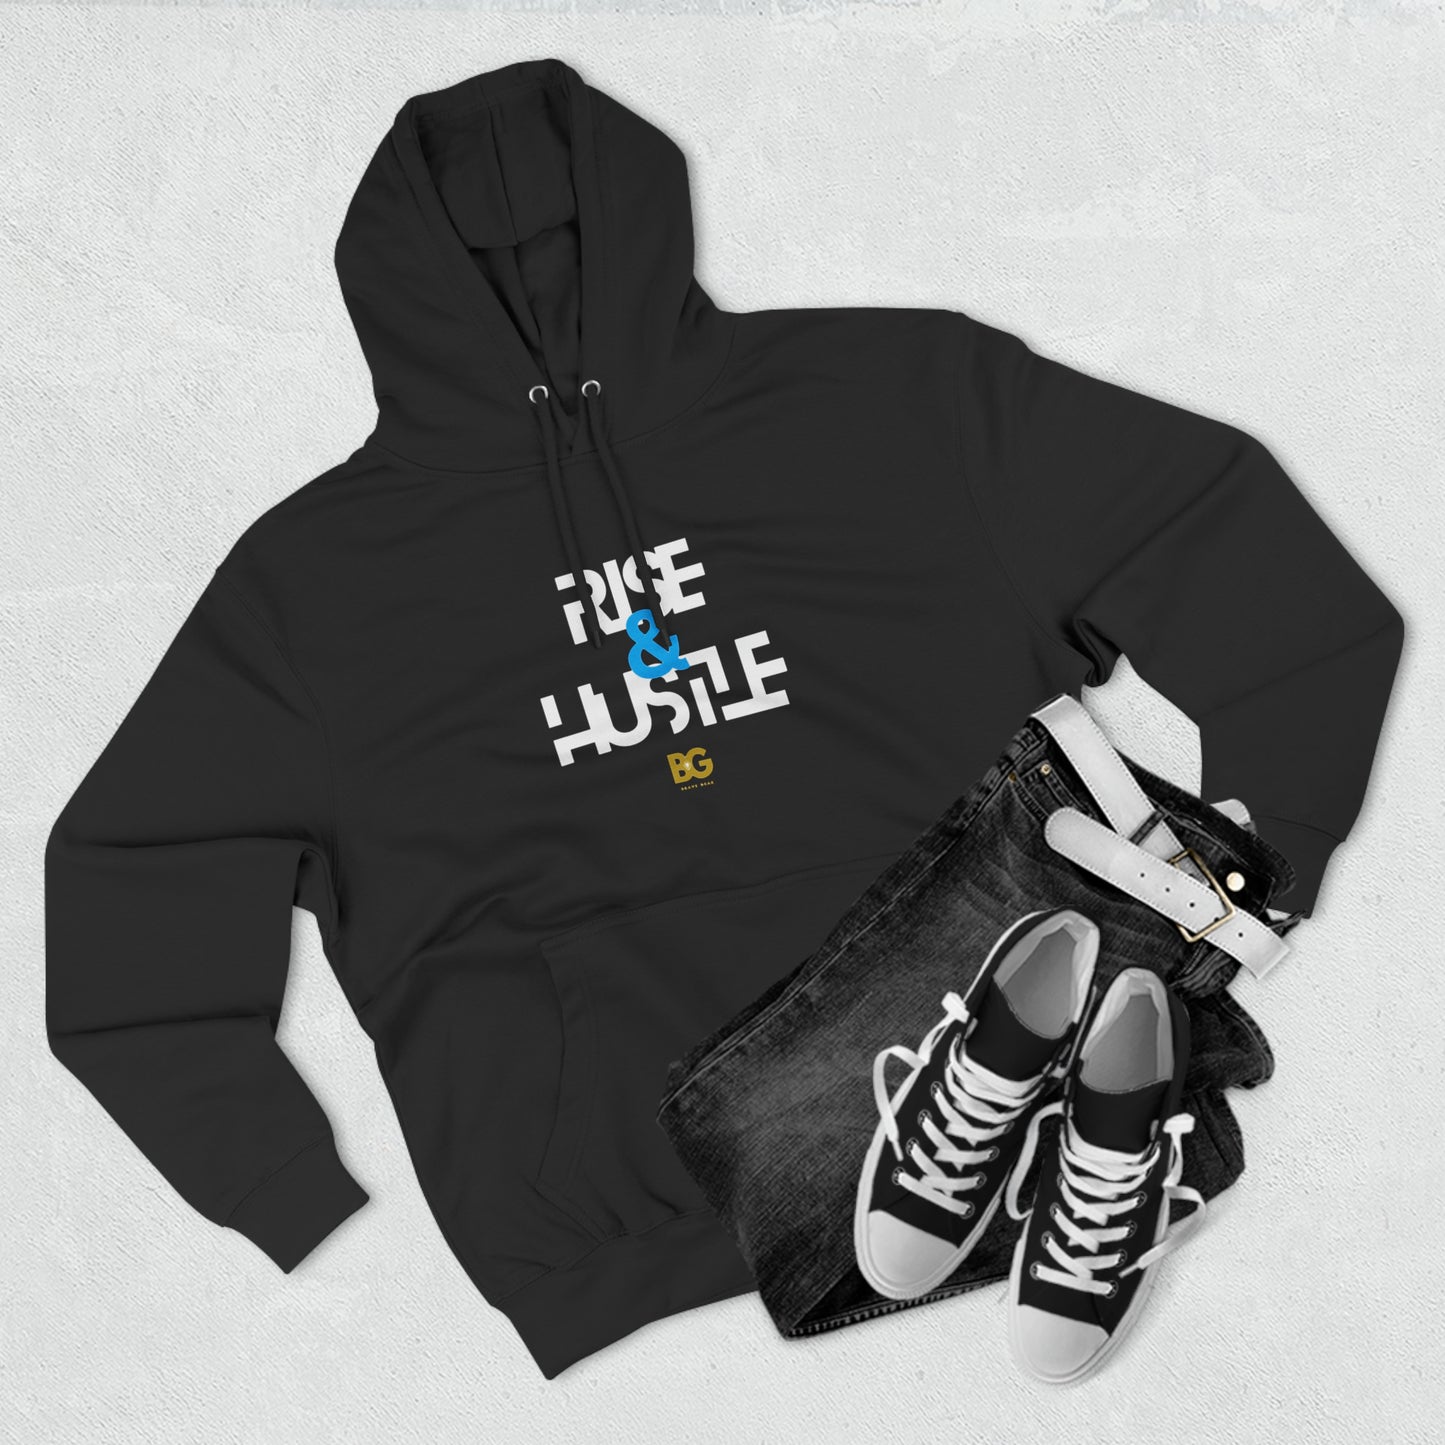 BG "Rise & Hustle" Premium Pullover Hoodie